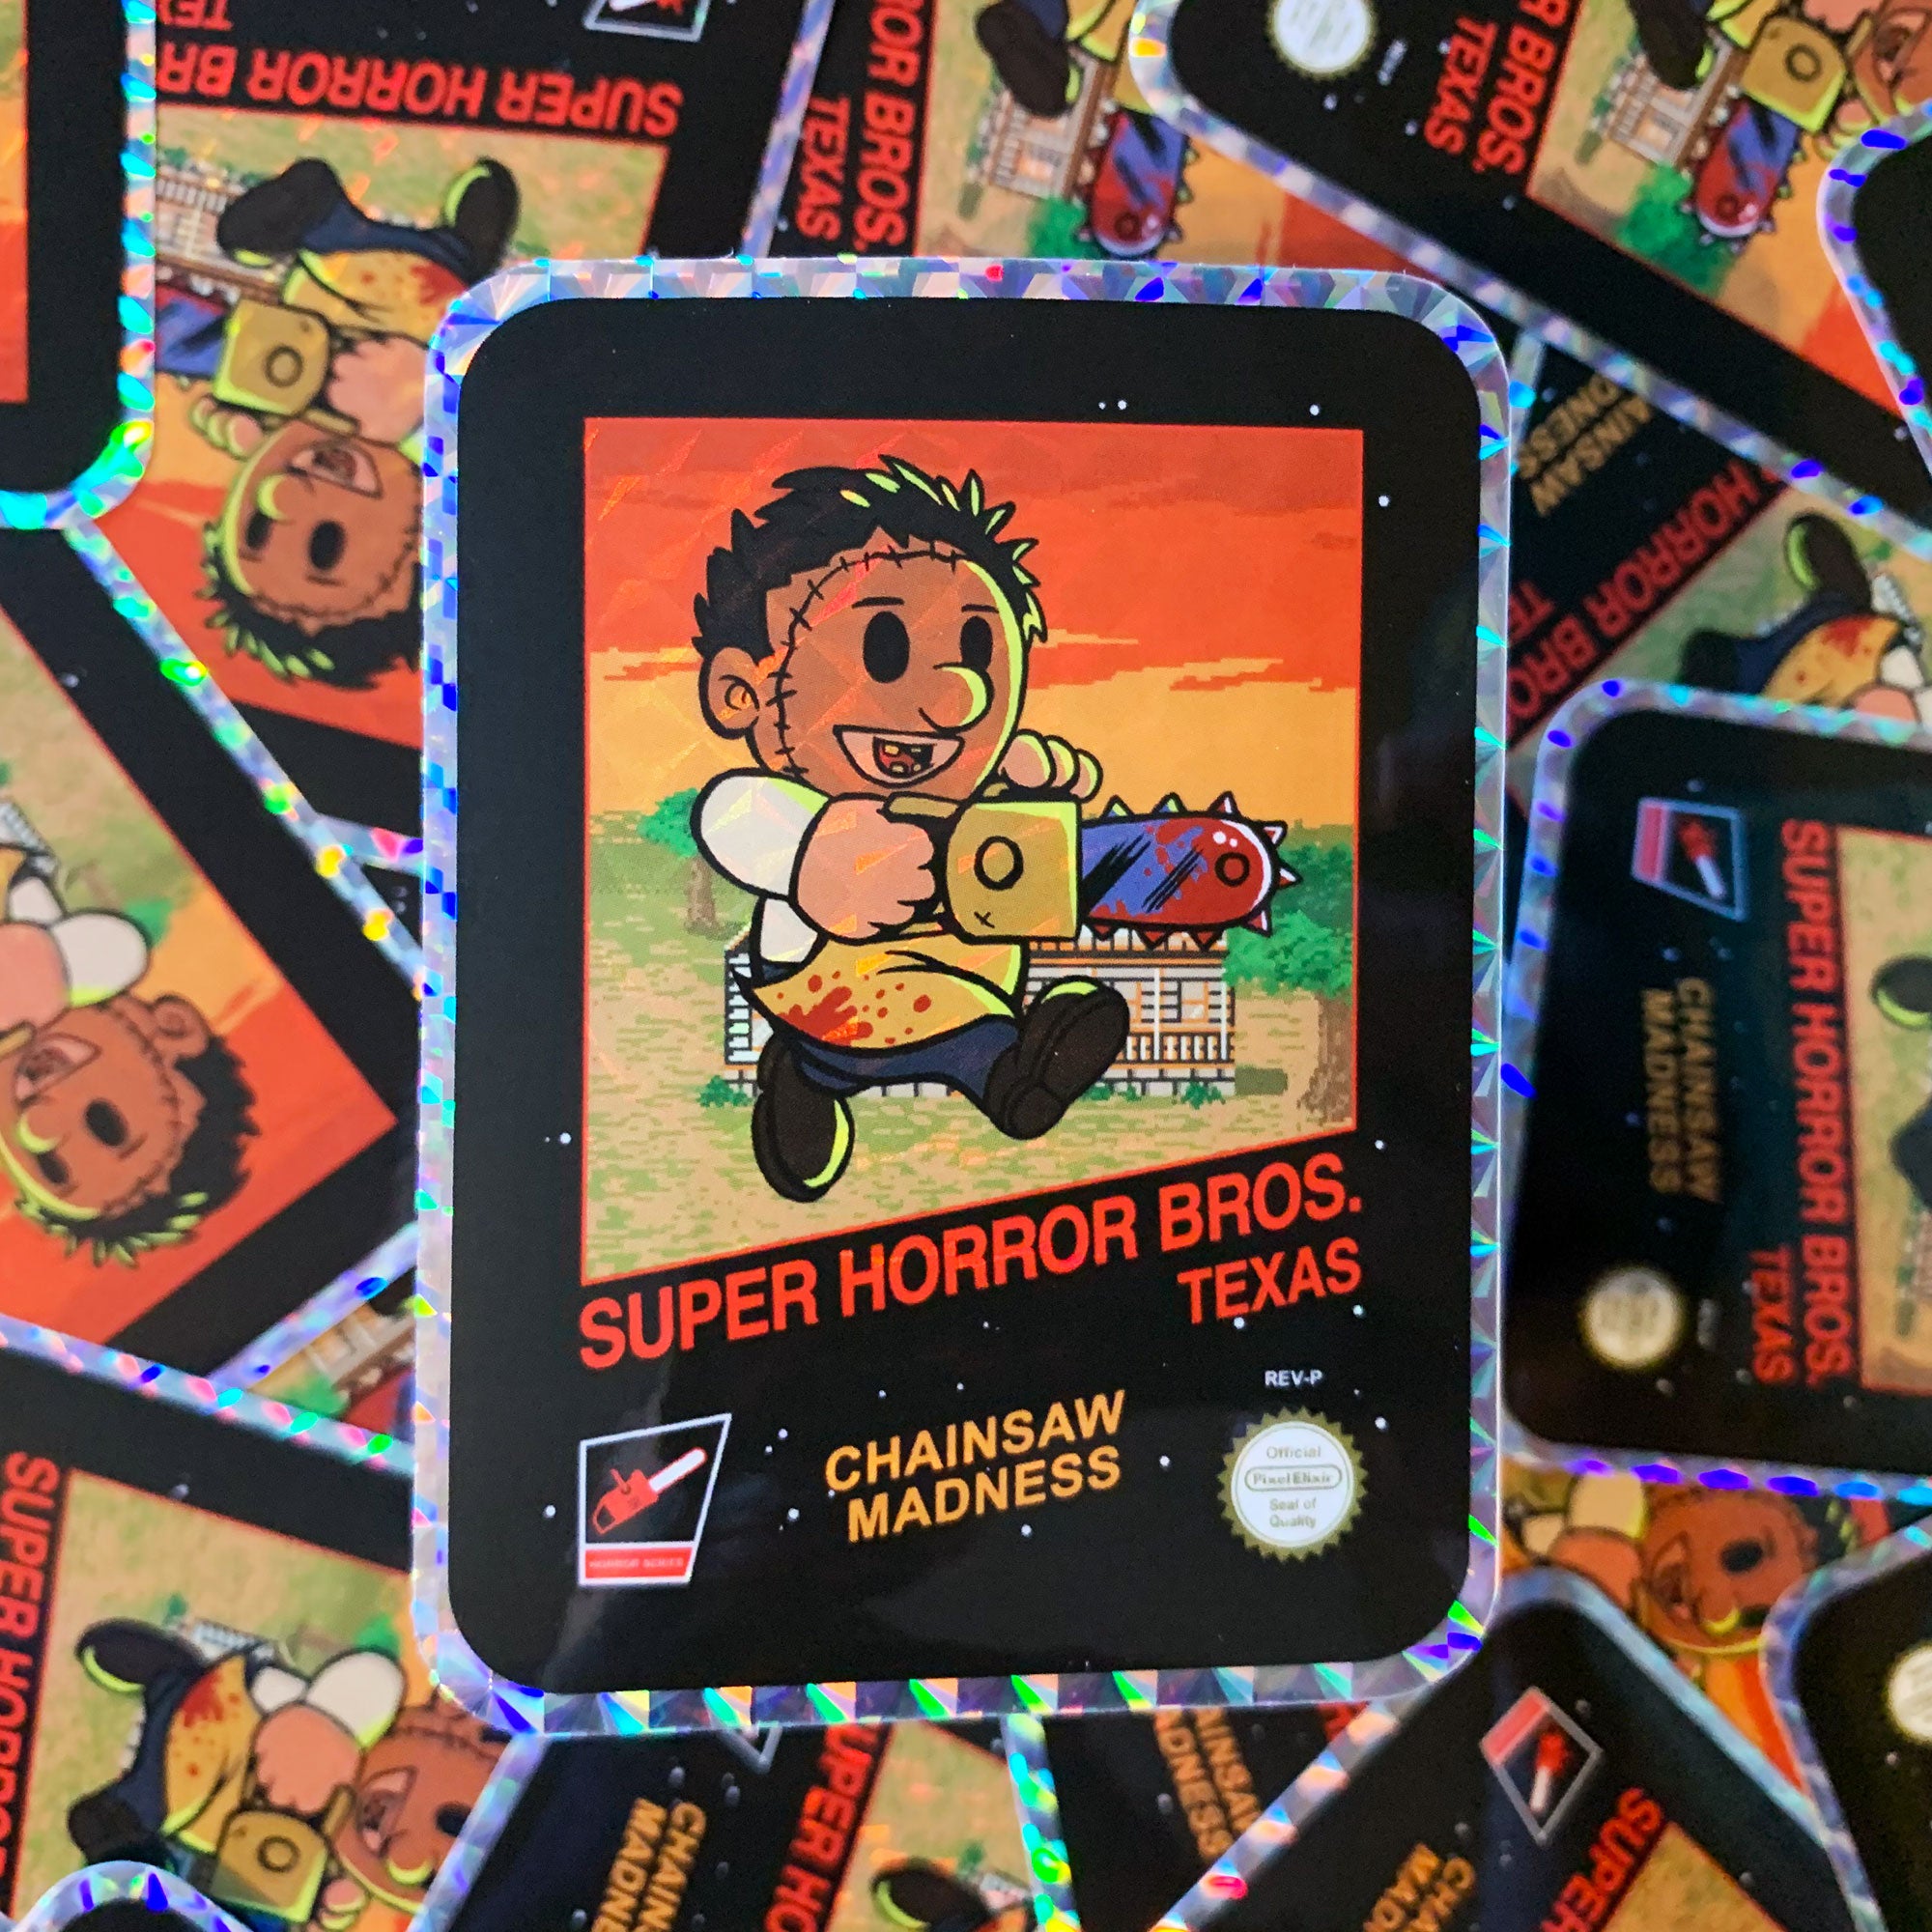 Super Horror Bros. Texas Hologram Sticker